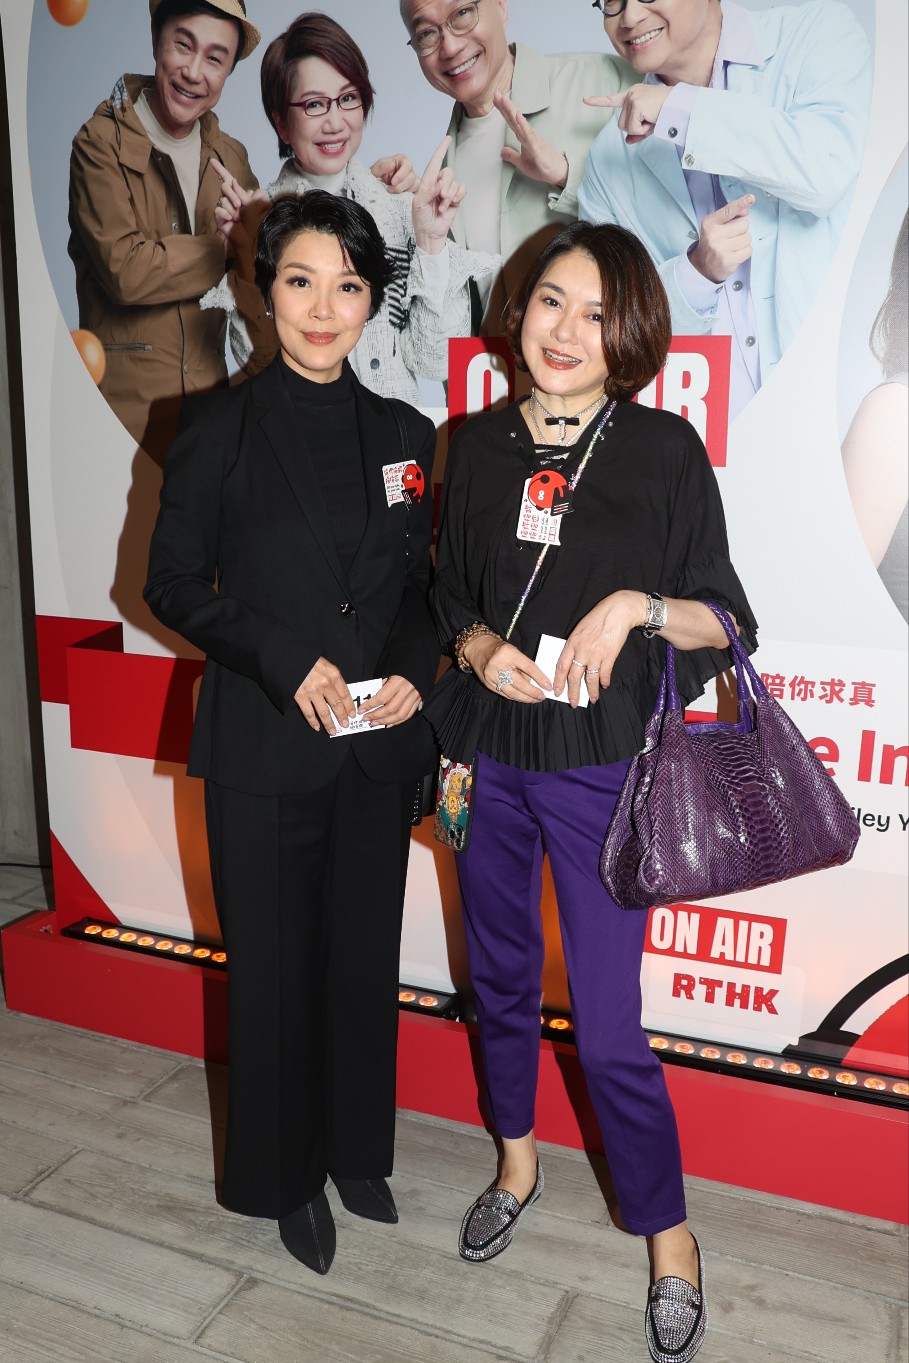 兰子和陈淽菁合作主持新节目《她・他・它》。